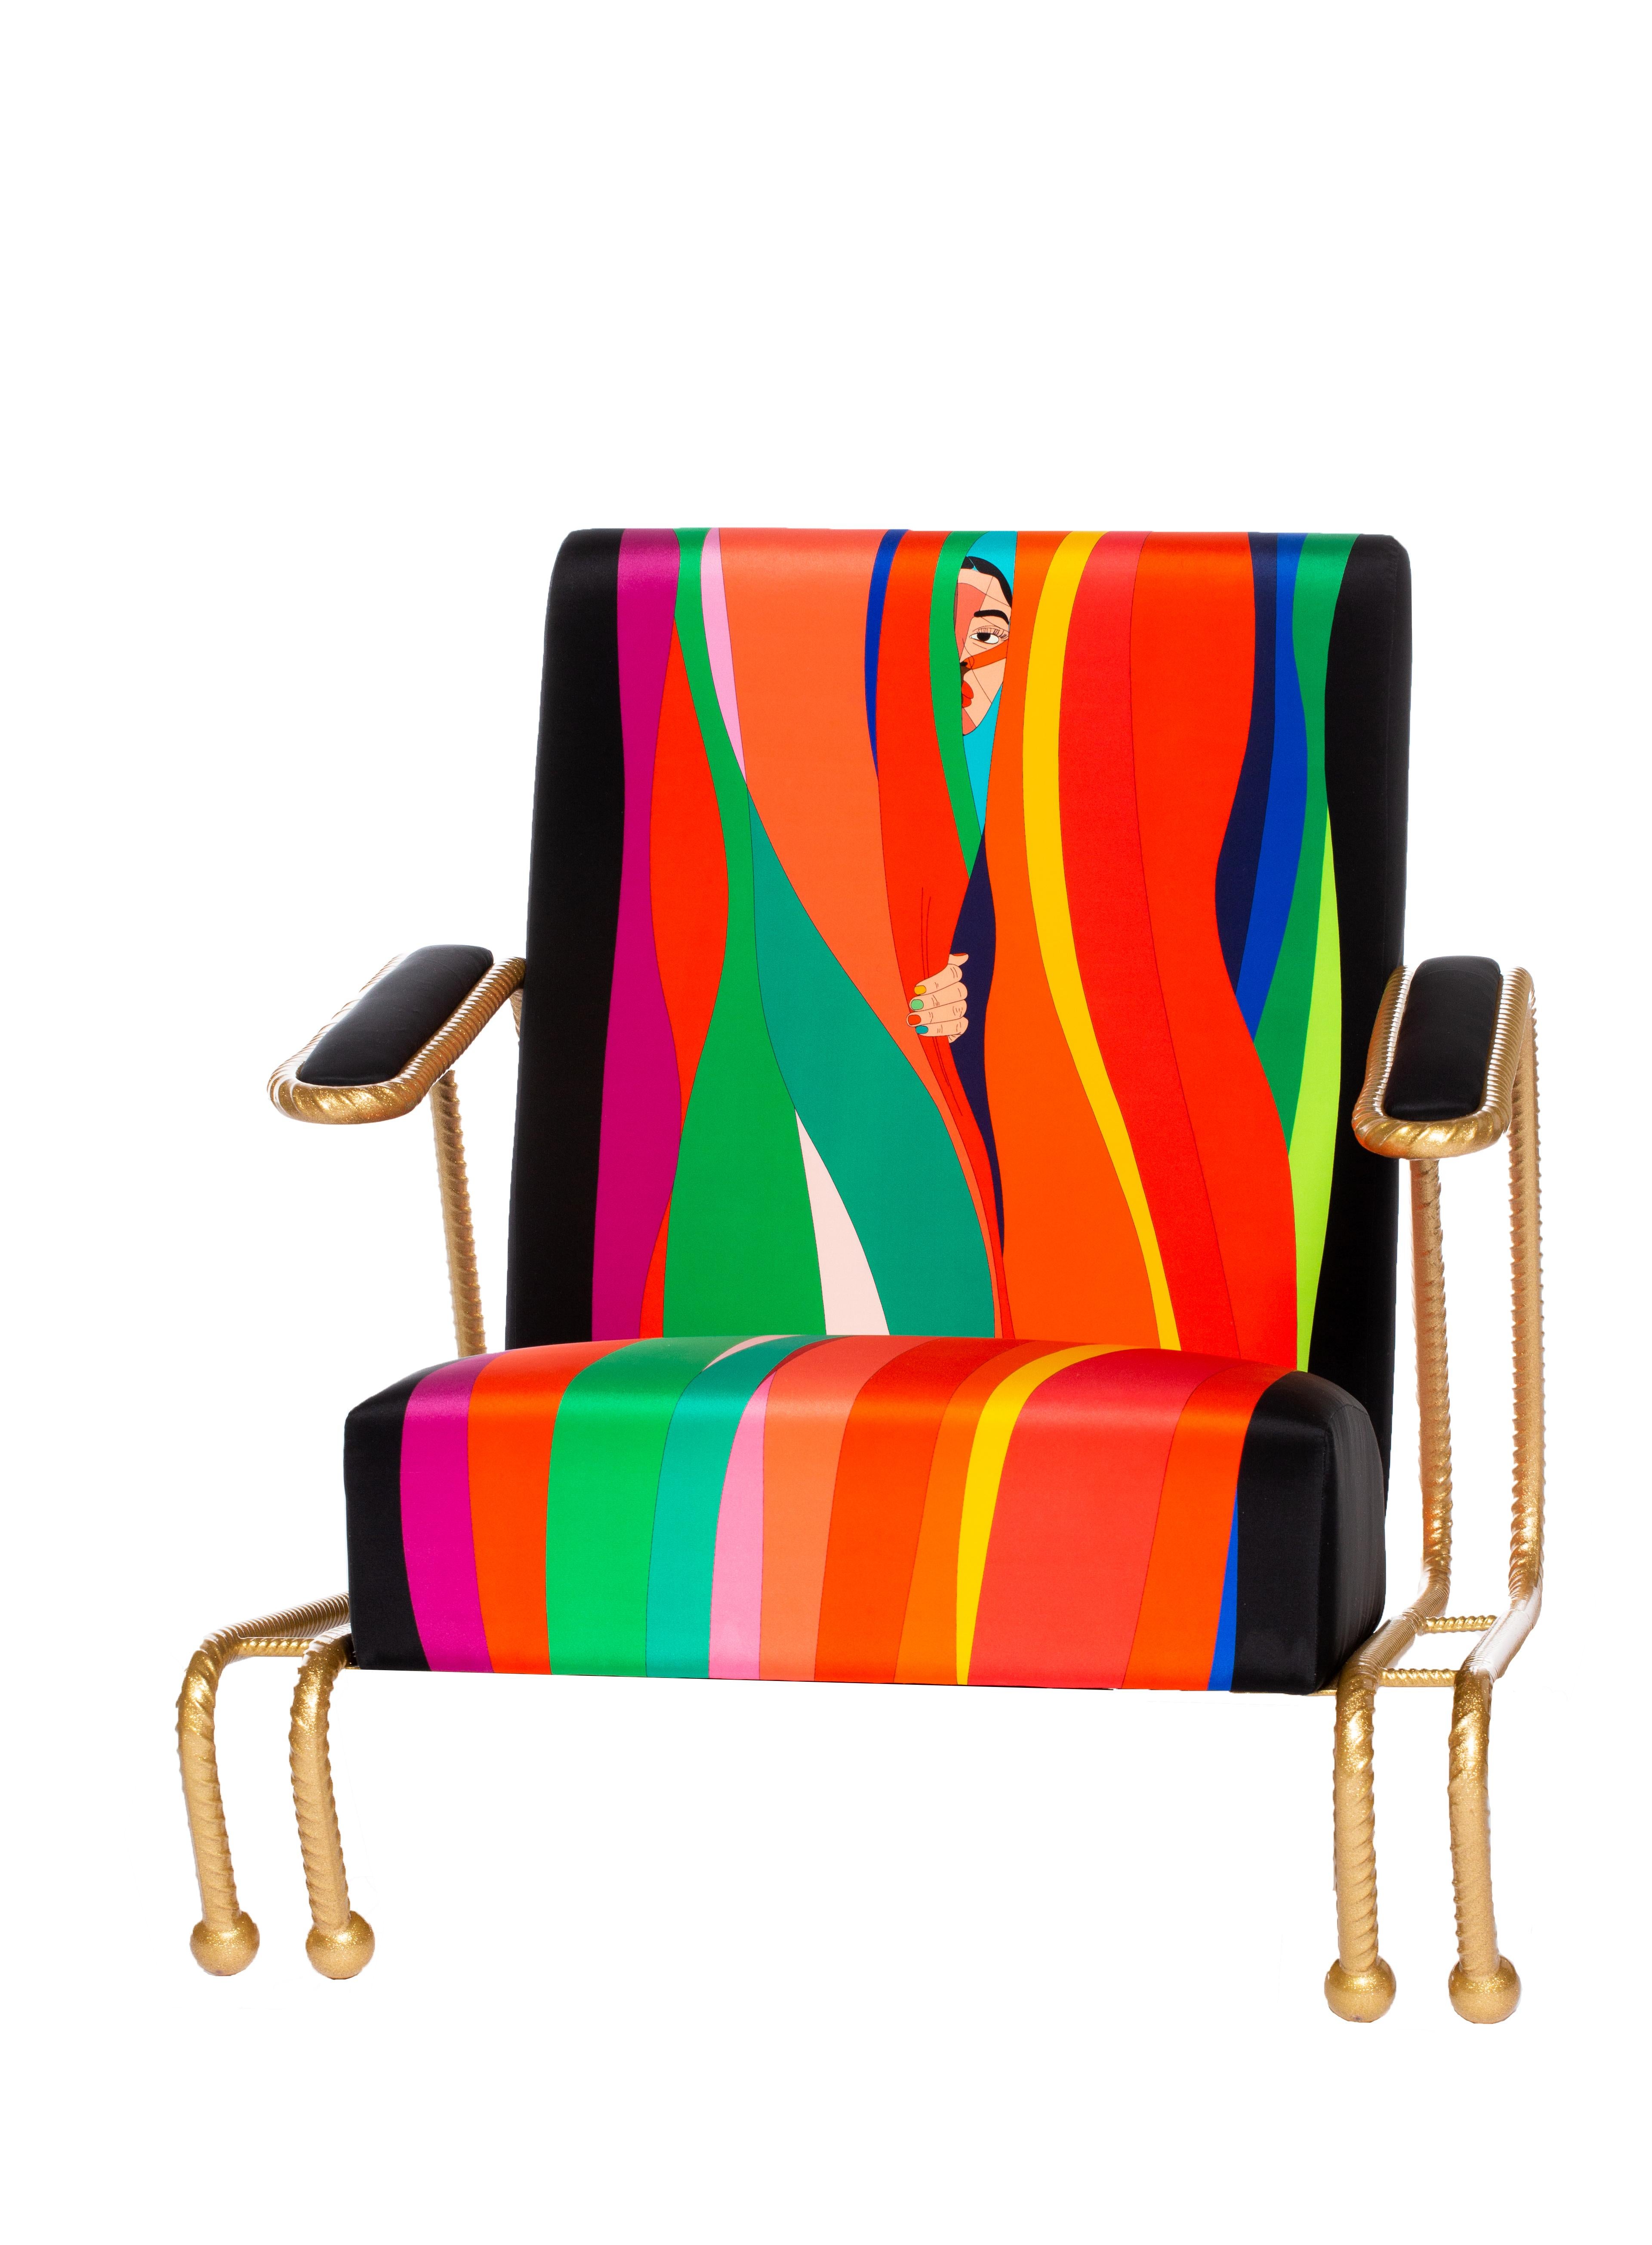 Chaise longue sur mesure avec revêtement en soie à cent pour cent dans des textiles graphiques originaux. Le cadre est fabriqué à partir de barres d'armature de construction de 1